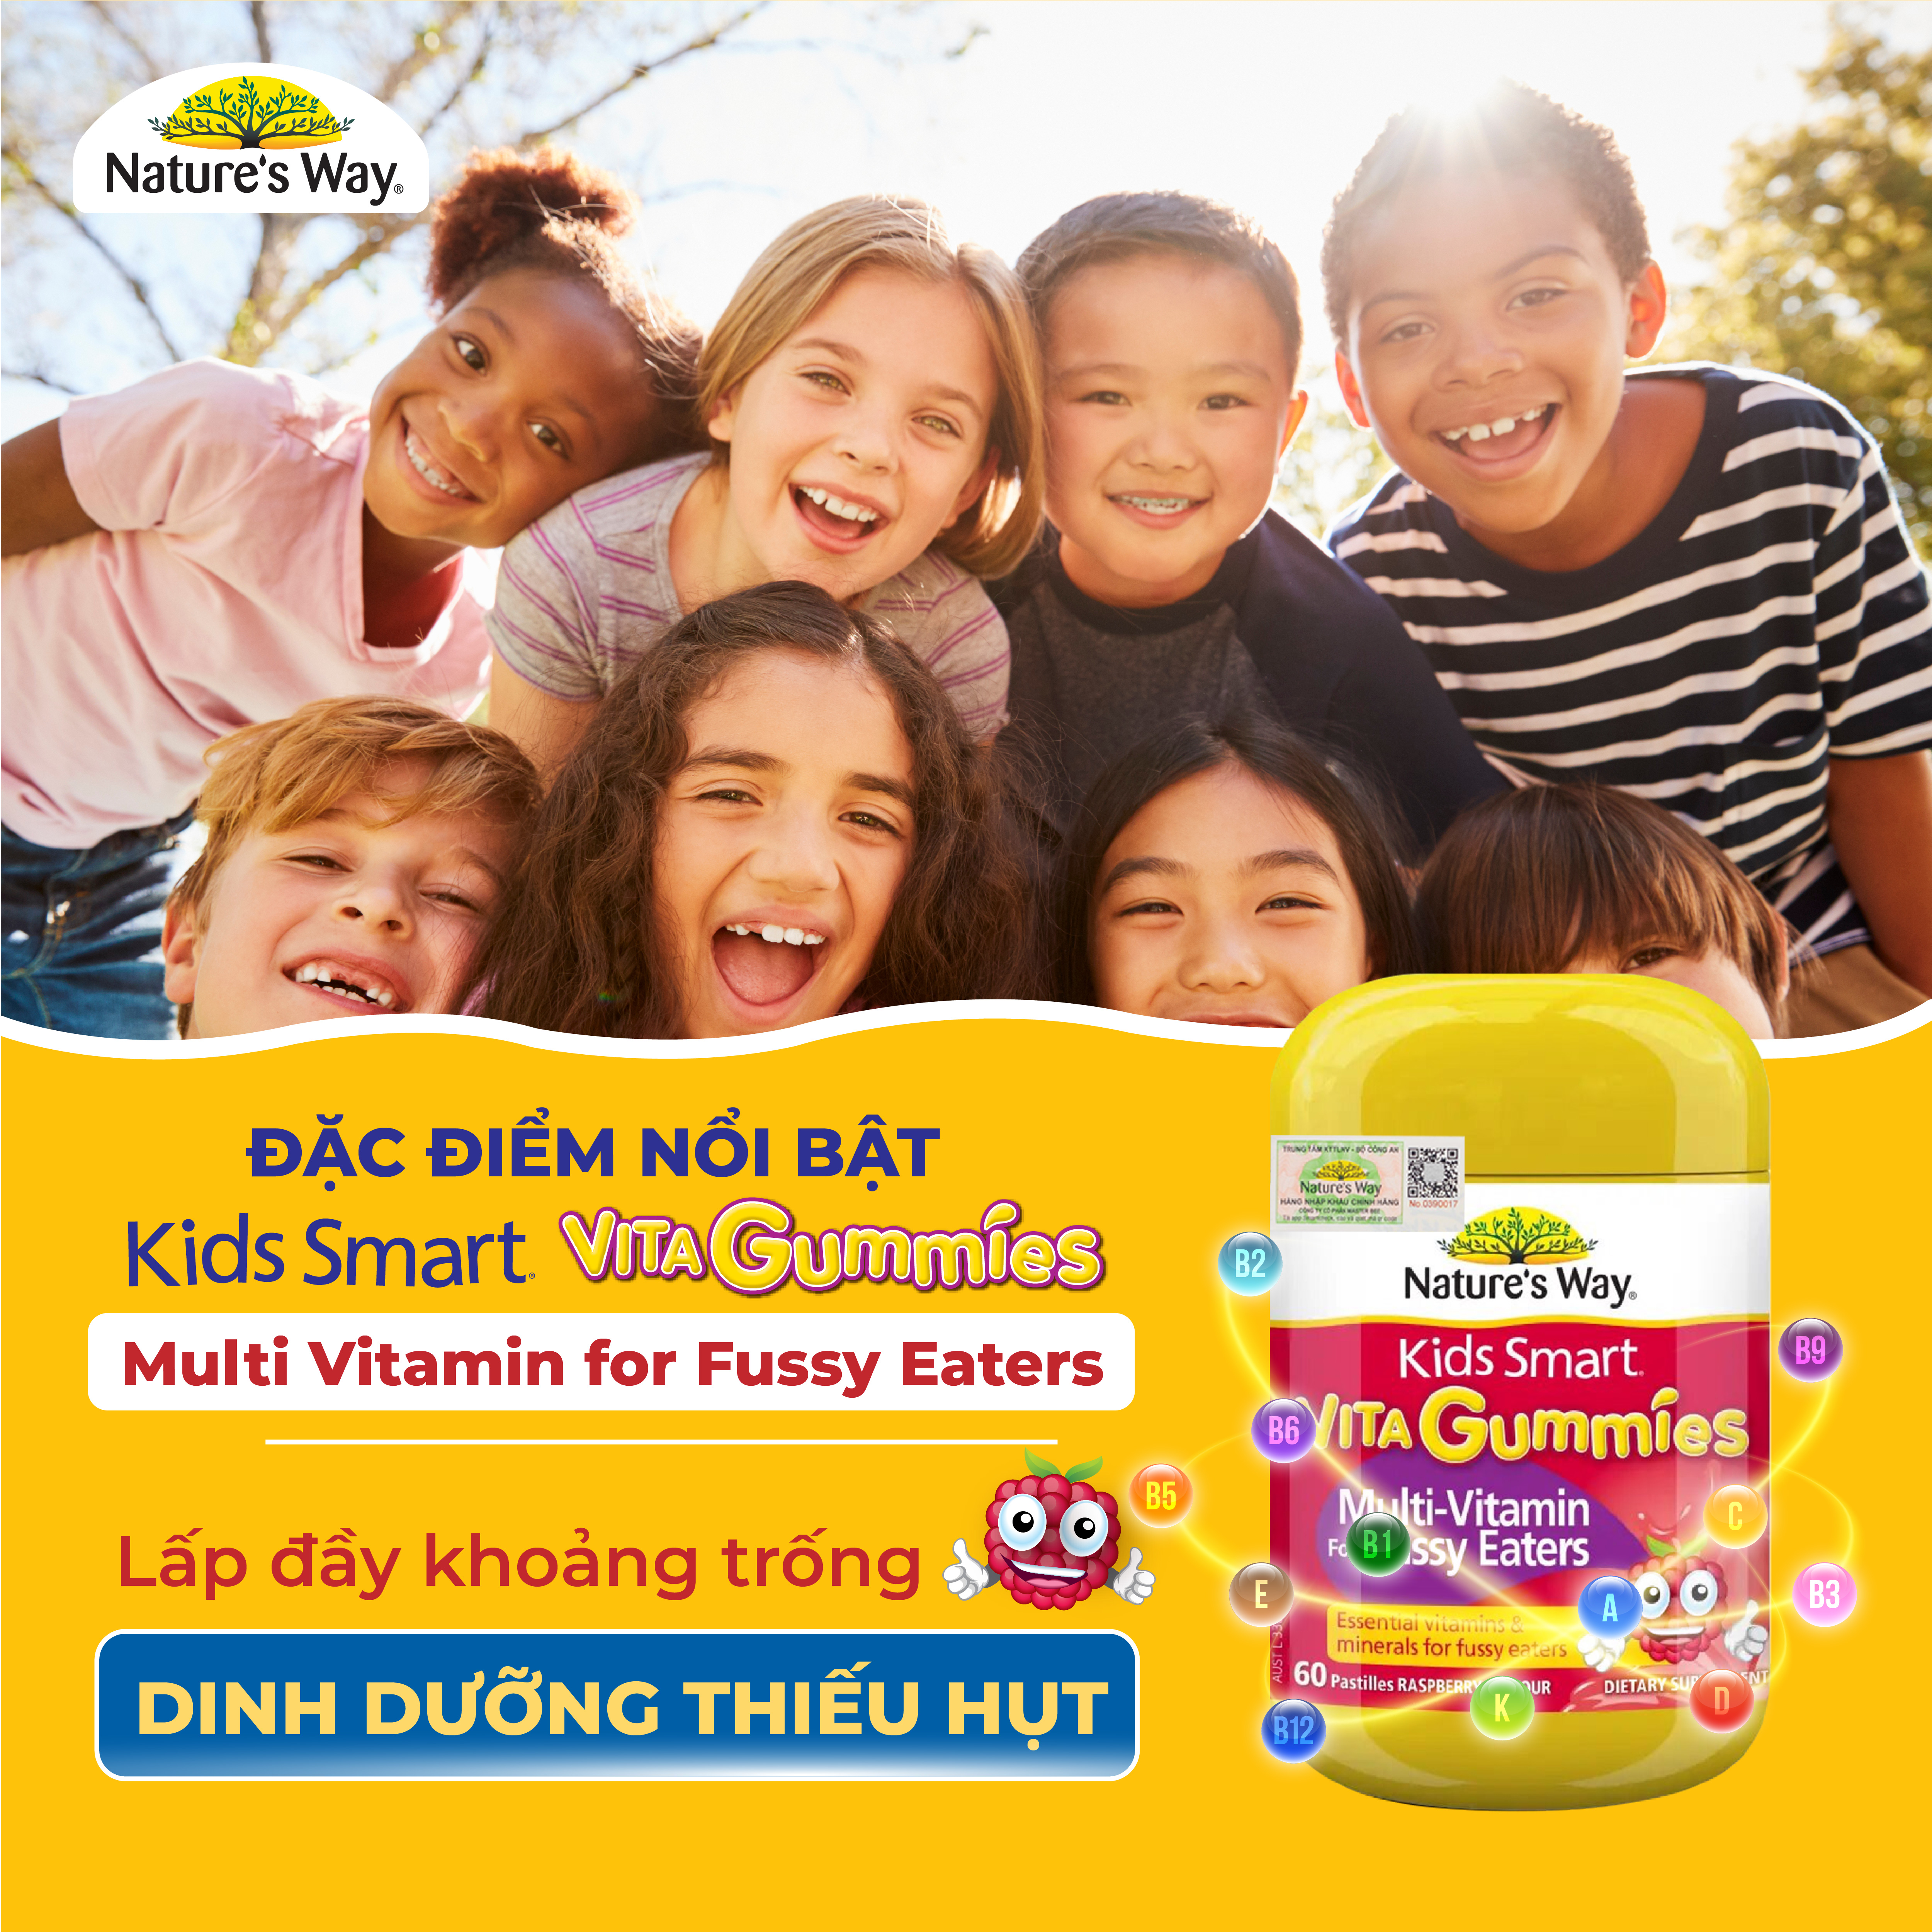 Kẹo Dẻo Vi Chất Cho Bé Nature's Way Kids Smart Vita Gummies Multi Vitamin for Fussy Eaters Kích Thích Ăn Ngon 60 Viên